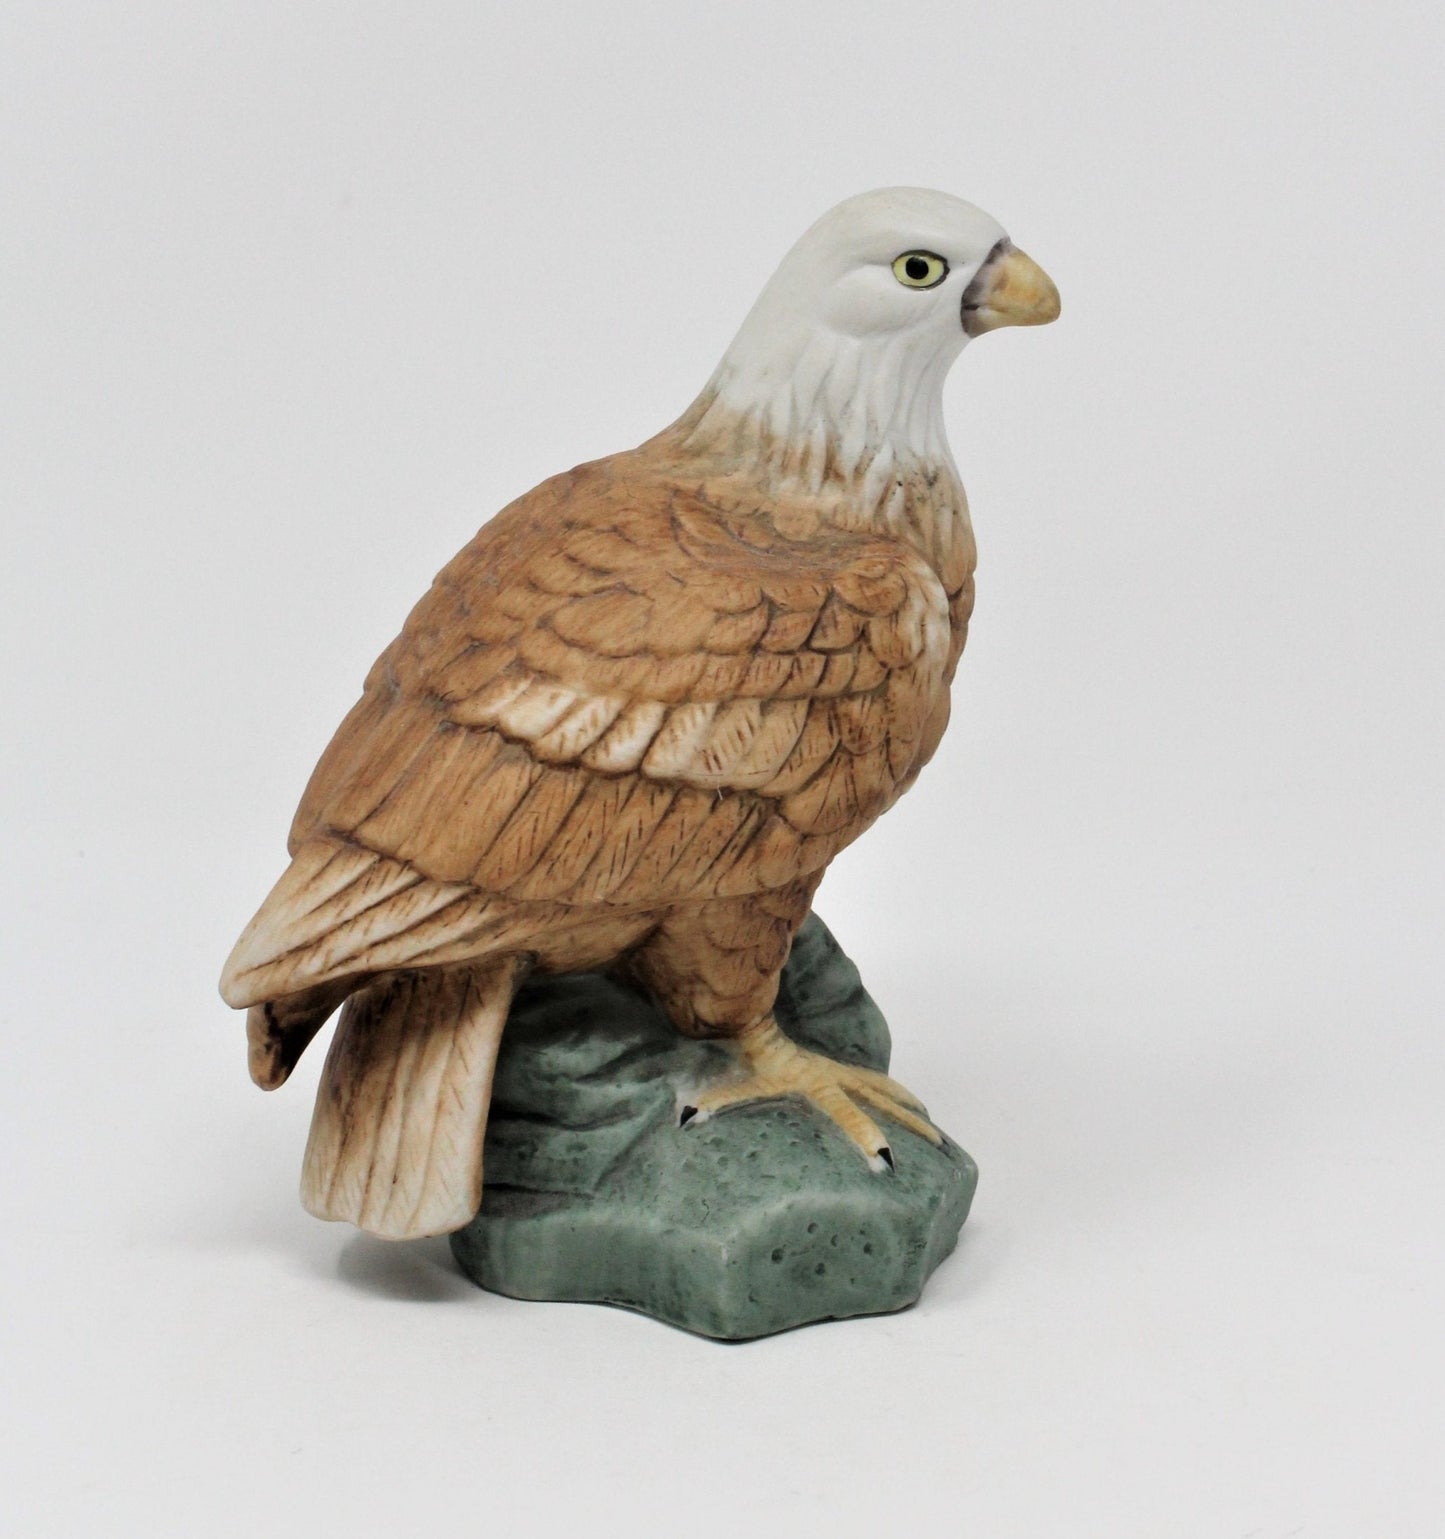 Figurine, Bald Eagle Standing on Rock, Porcelain Bisque, Vintage